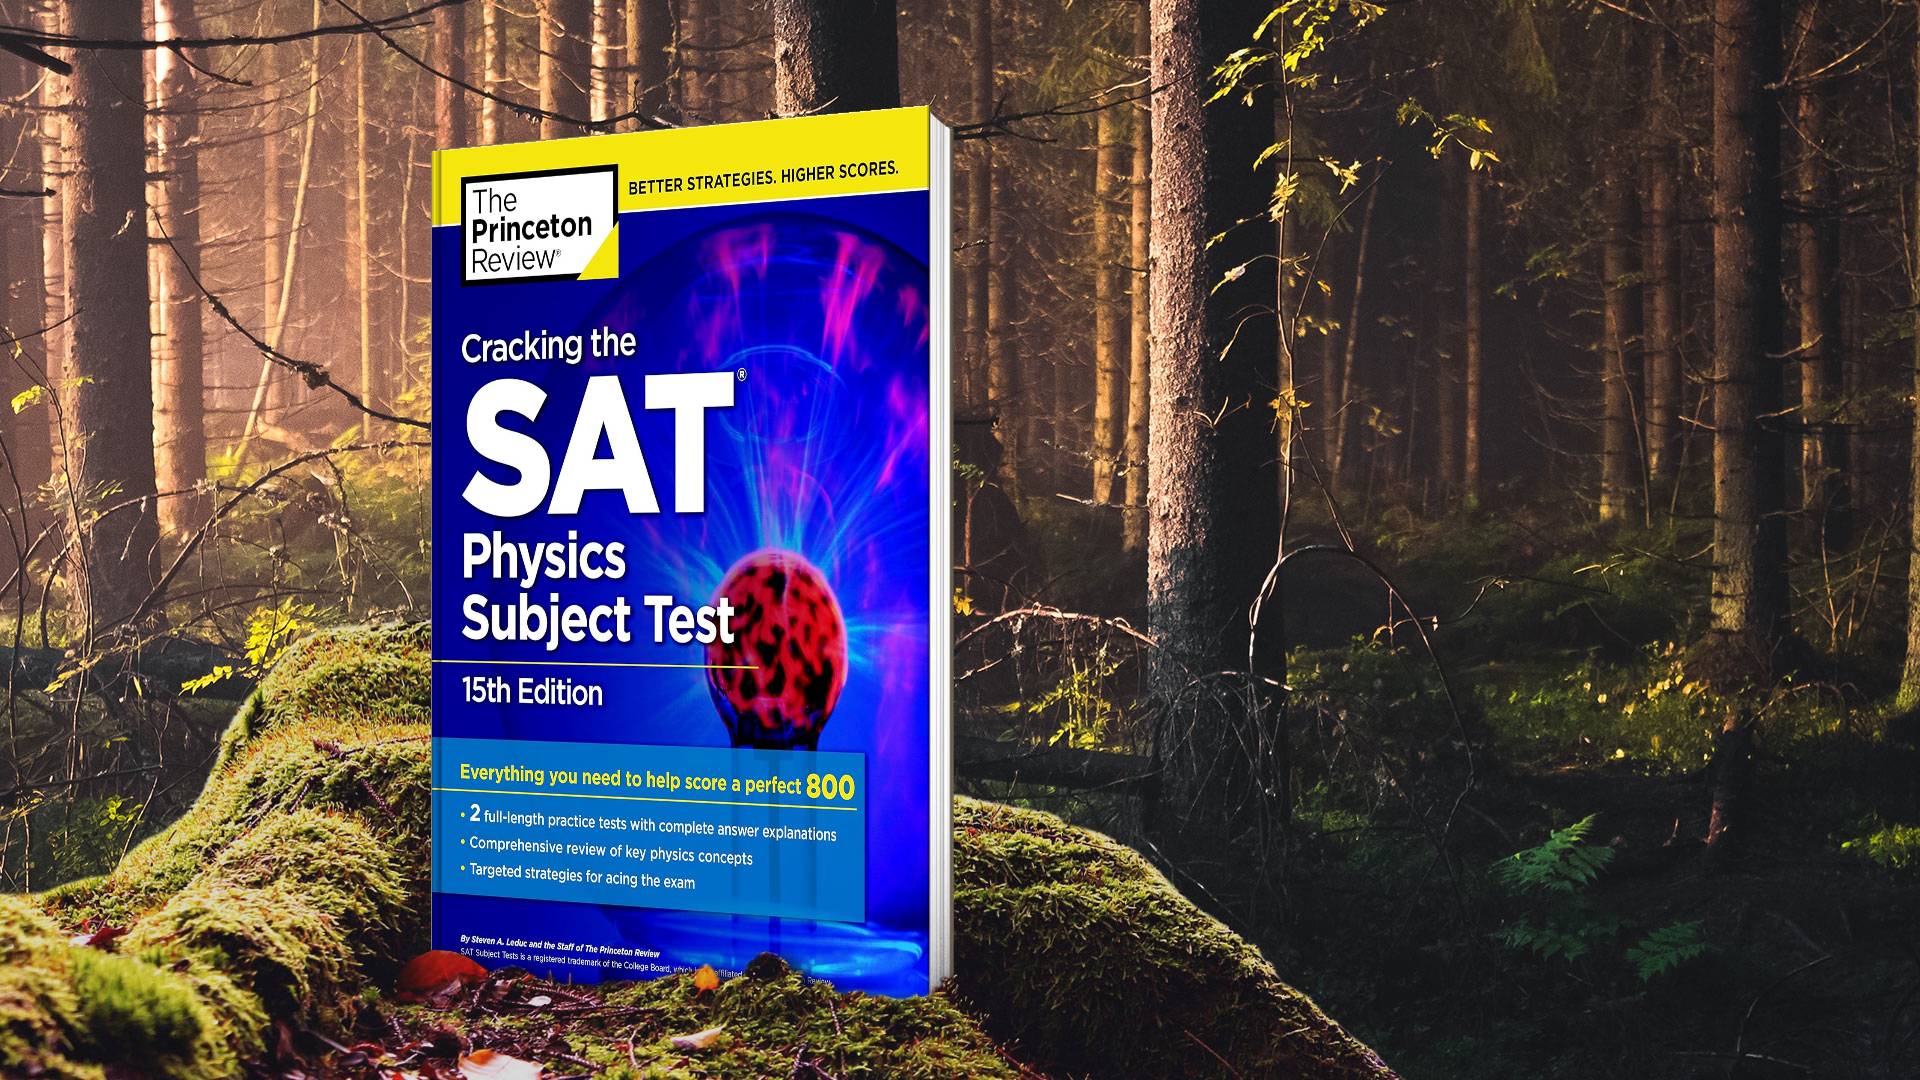 کتاب Cracking the SAT Physics Subject Test 15th Edition کرکینگ د اس ای تی فیزیکس سابجکت تست ویرایش پانزدهم